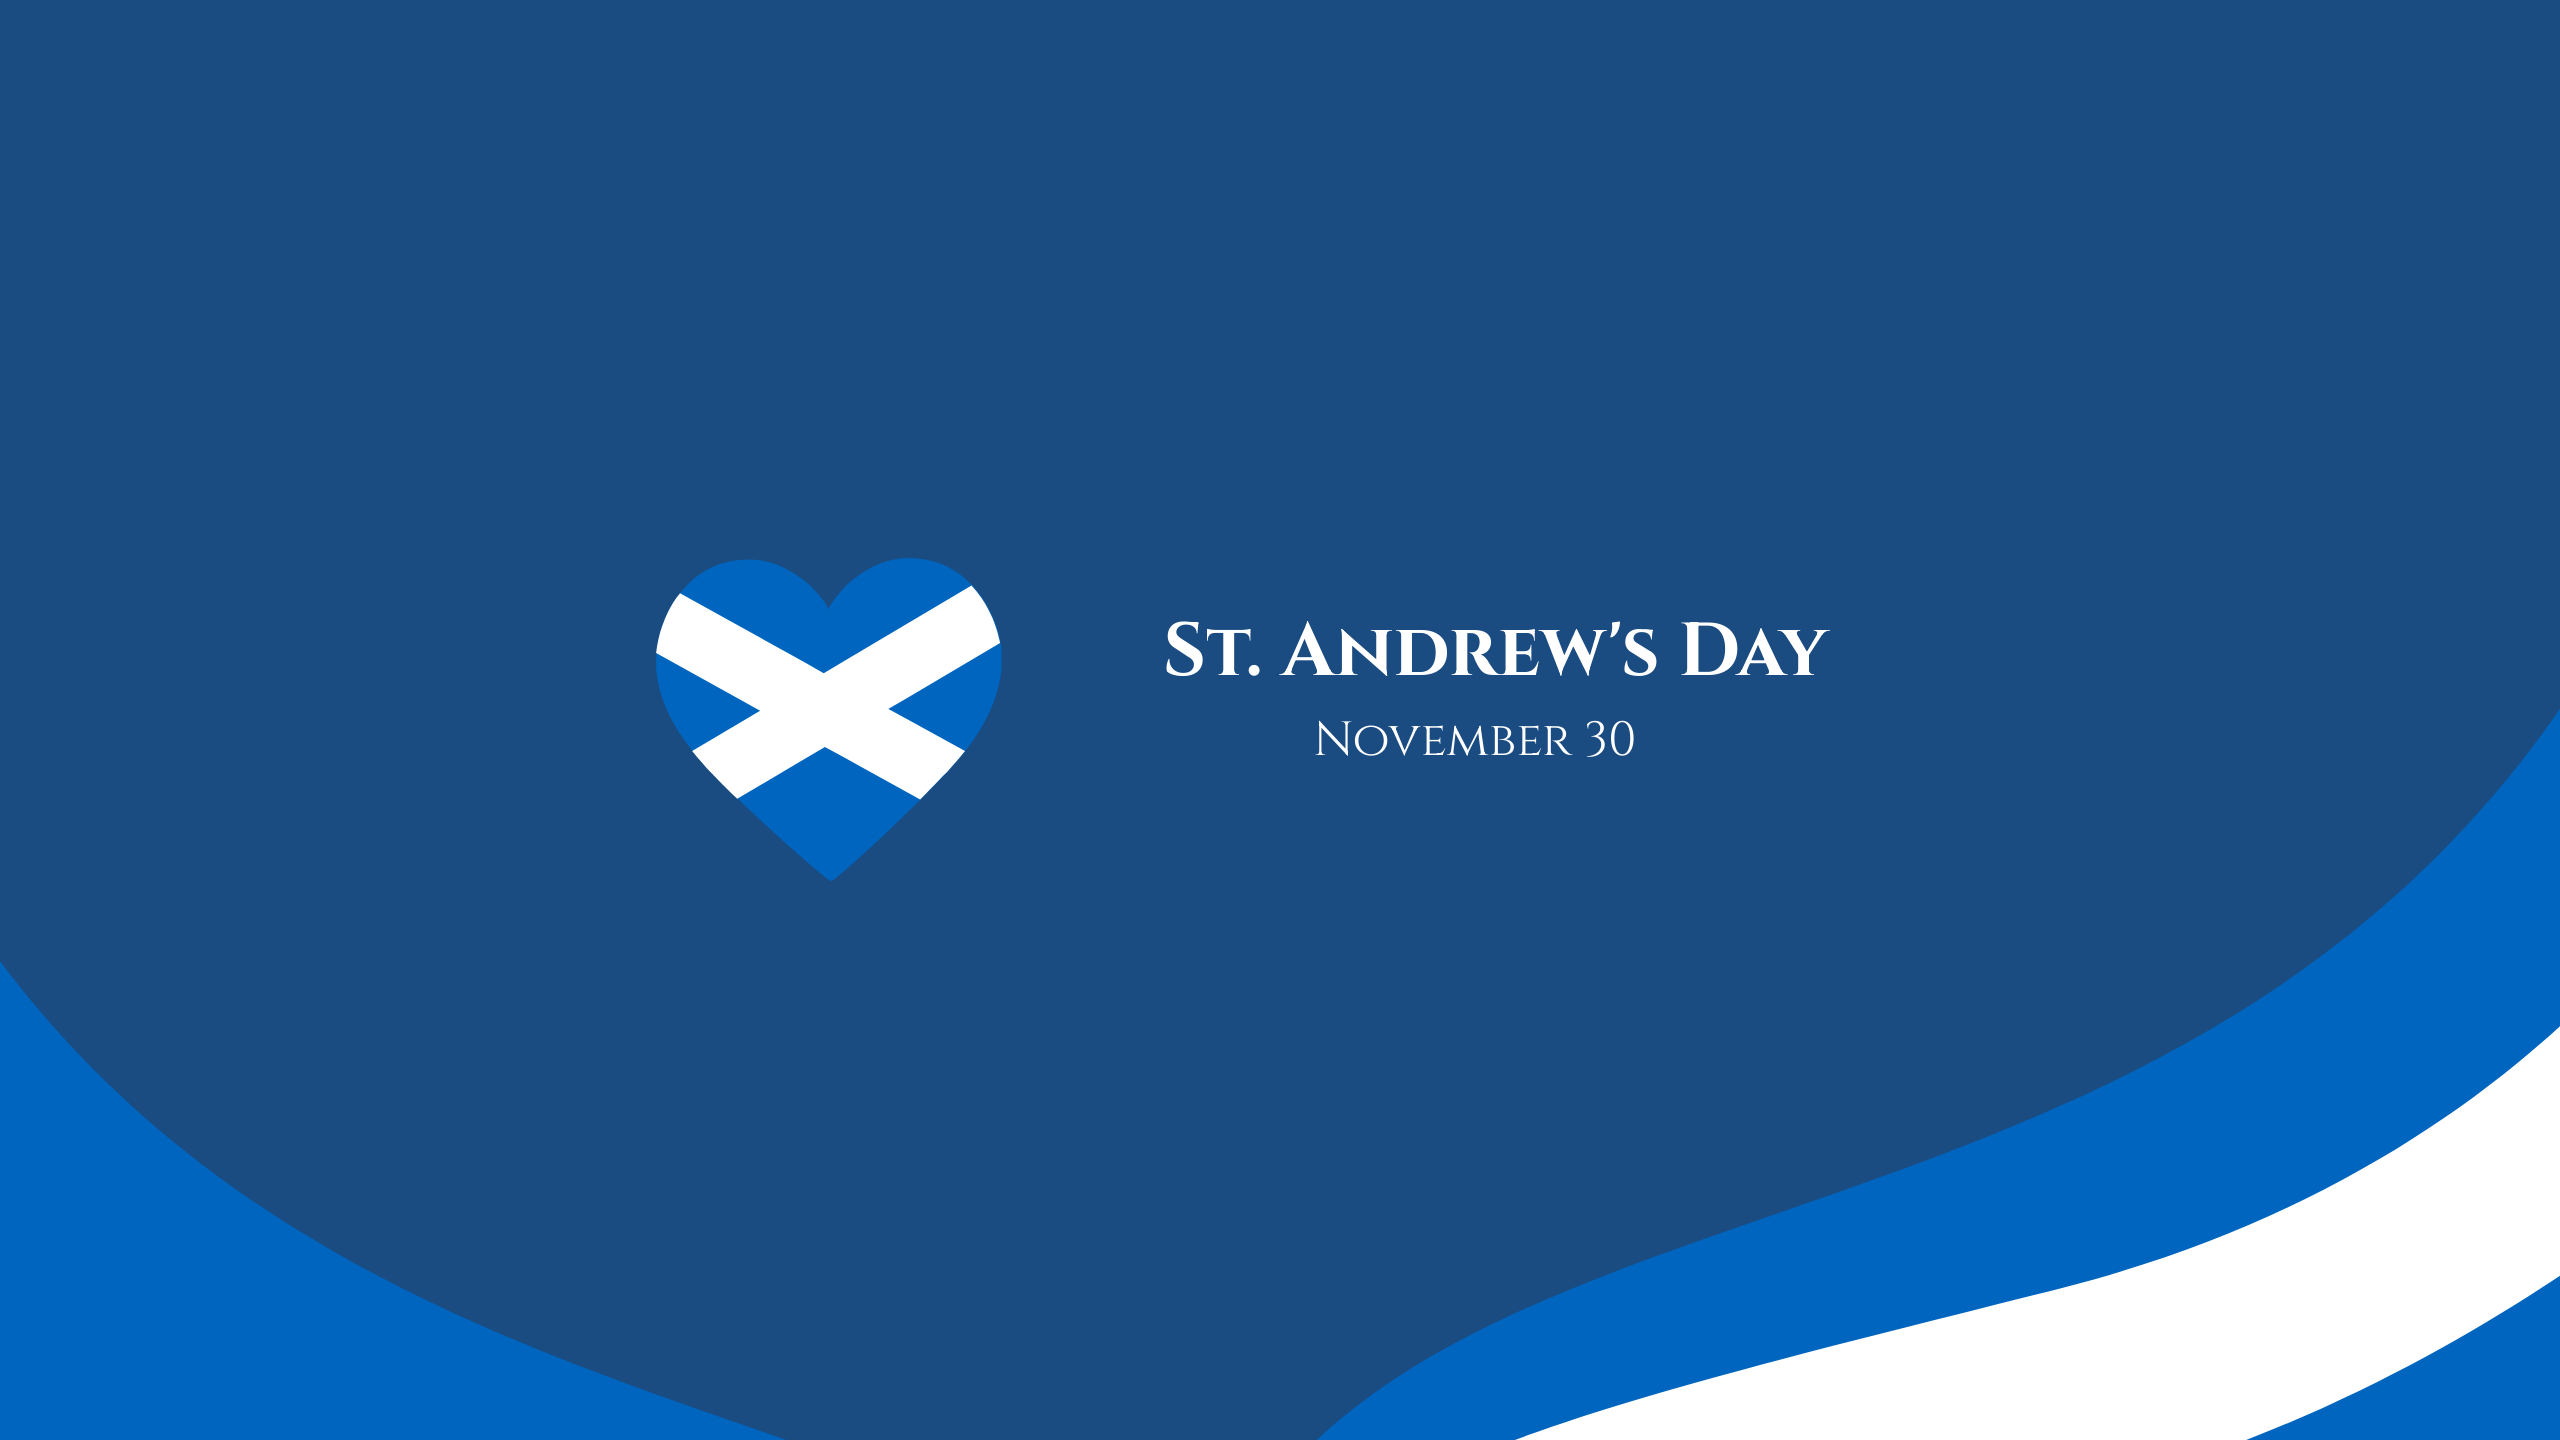 St. Andrew's Day